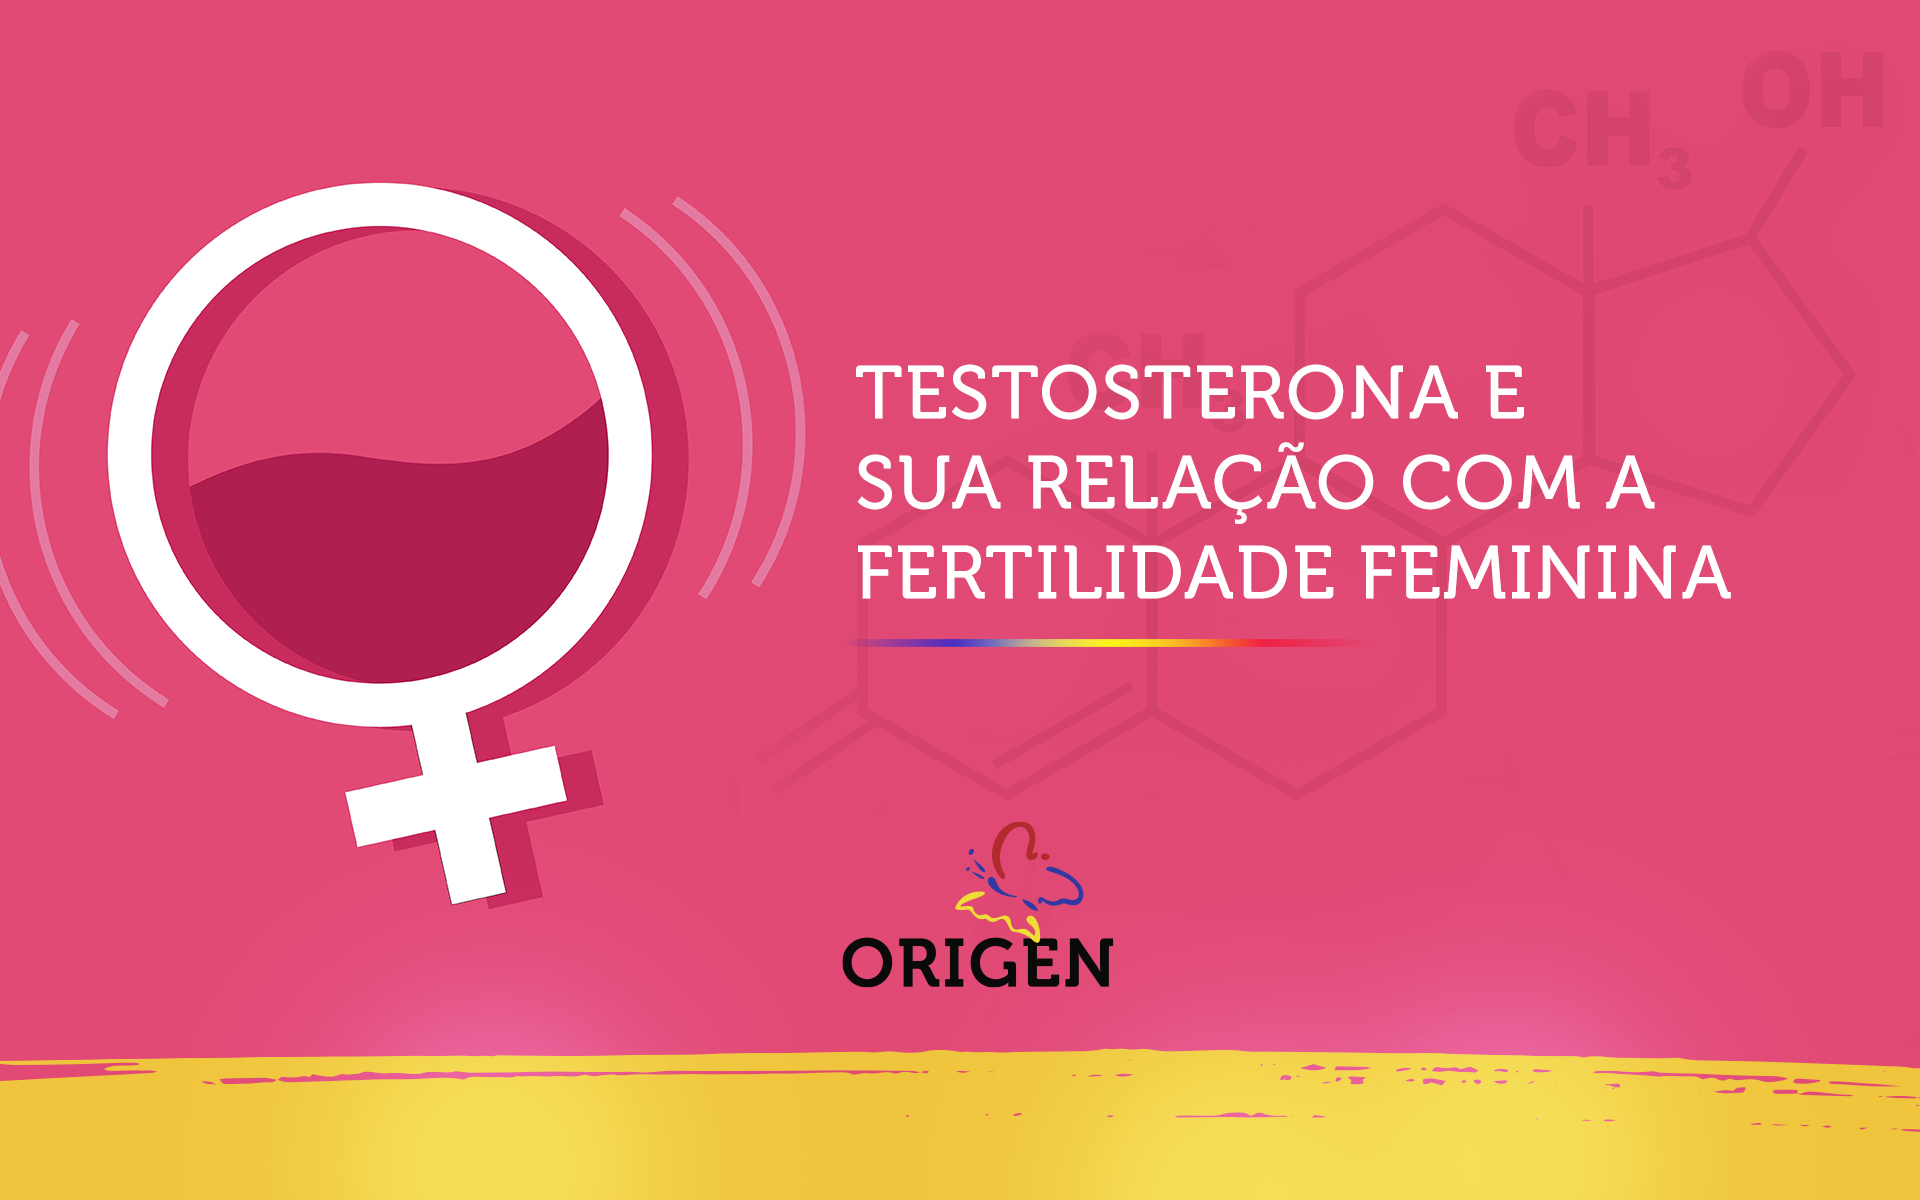 Testosterona e sua relação com a fertilidade feminina